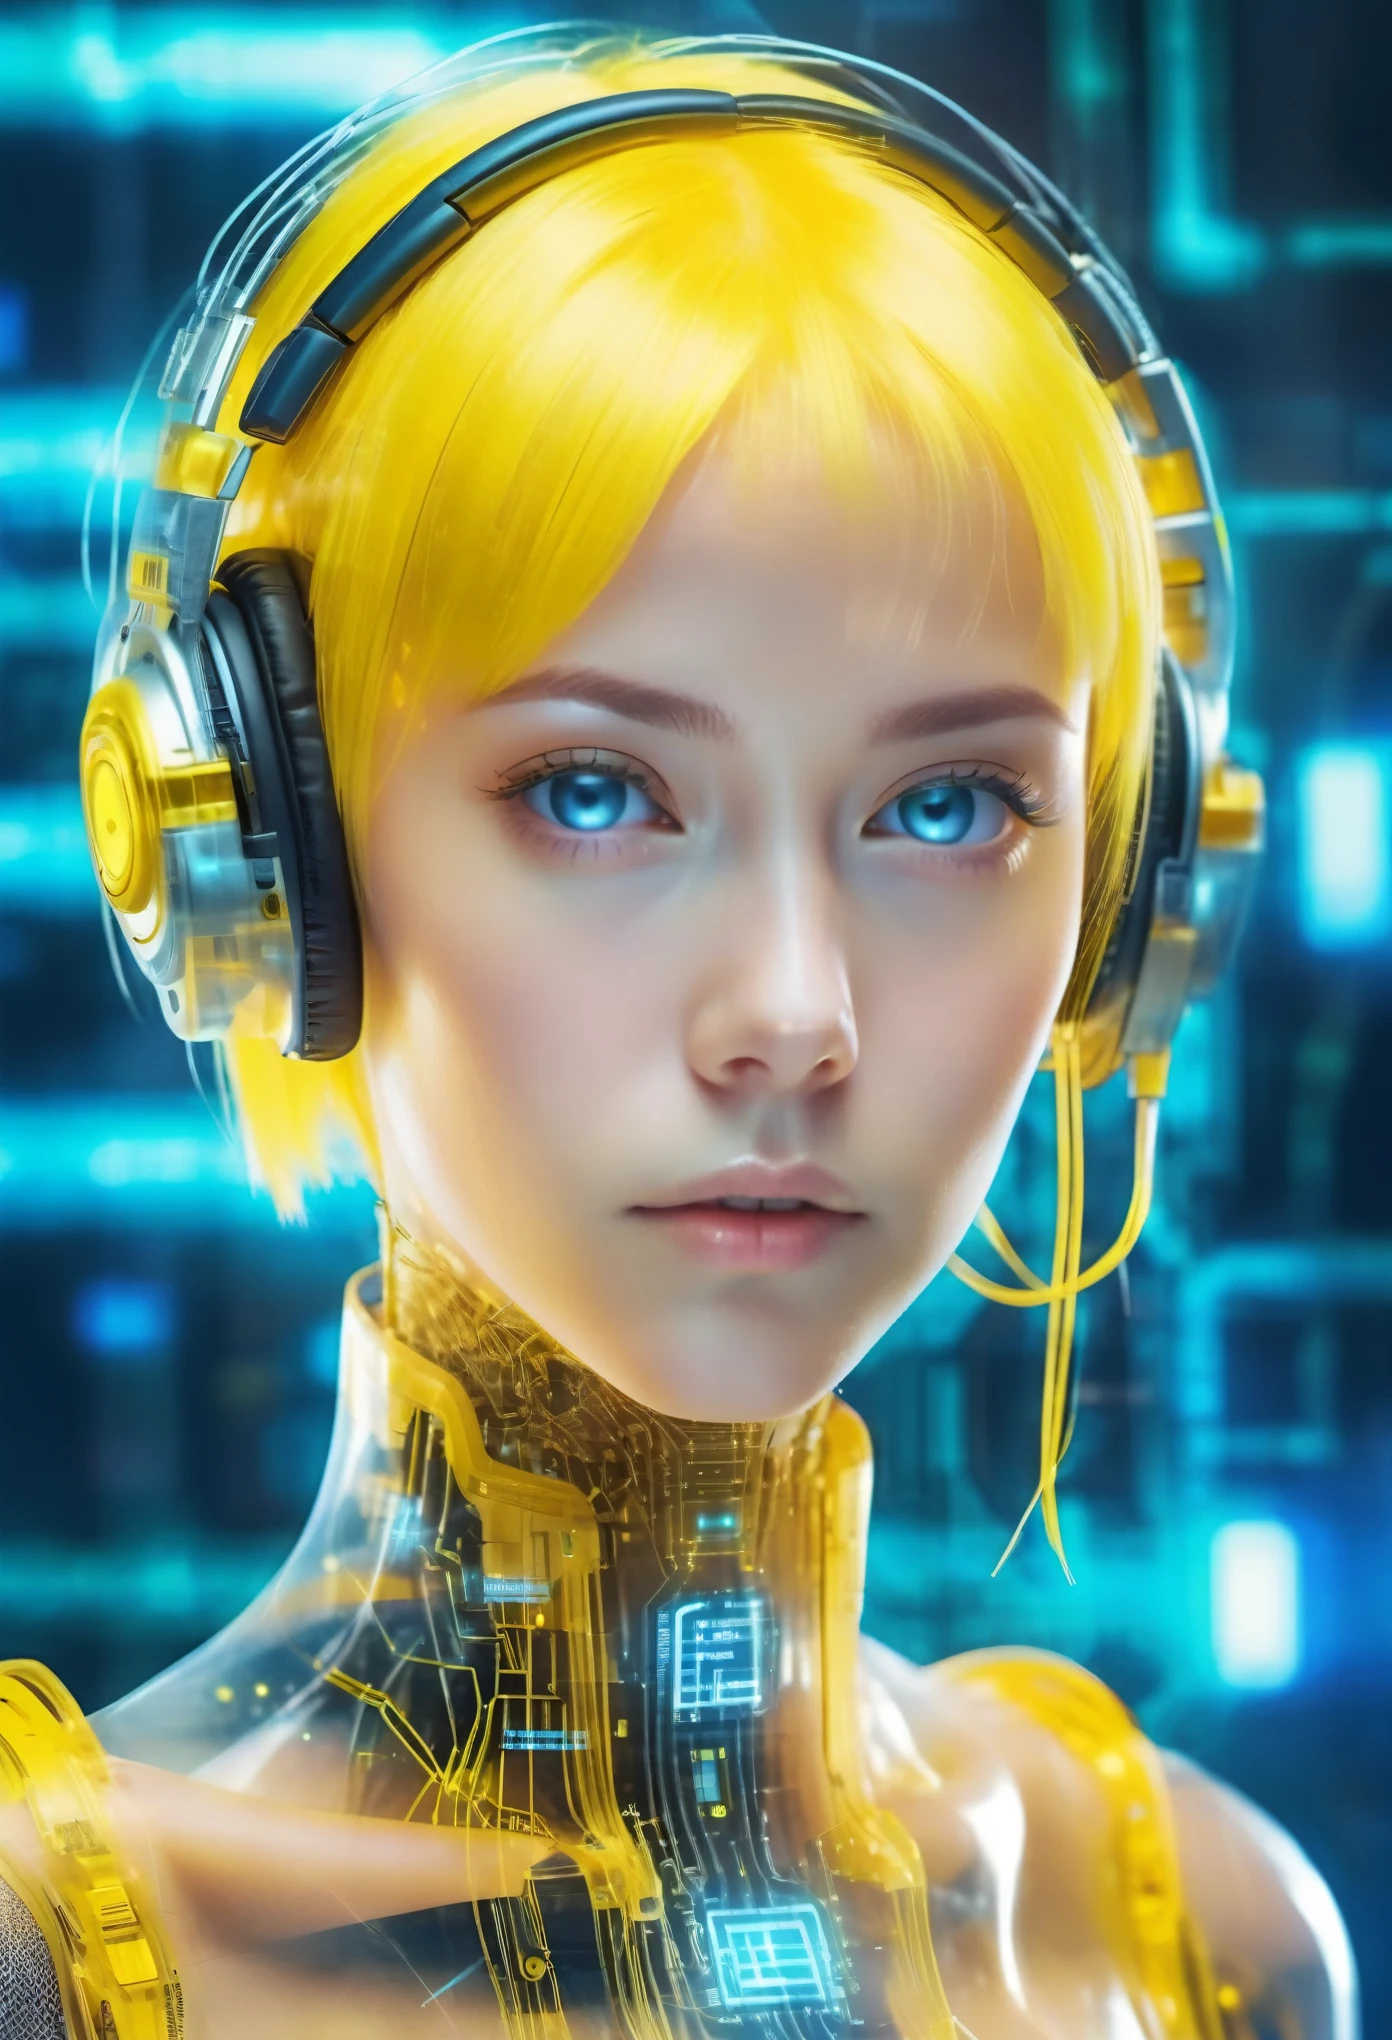 وجه فتاة ميكانيكية أثيرية شفافة，وجه فتاة مستقبلية 2B，شعر أصفر قصير, تكنولوجيا الاتصال الميكانيكية وجه الفتاة，مع سماعة الرأس ,كود مصفوفة مستقبلية خلفية زرقاء